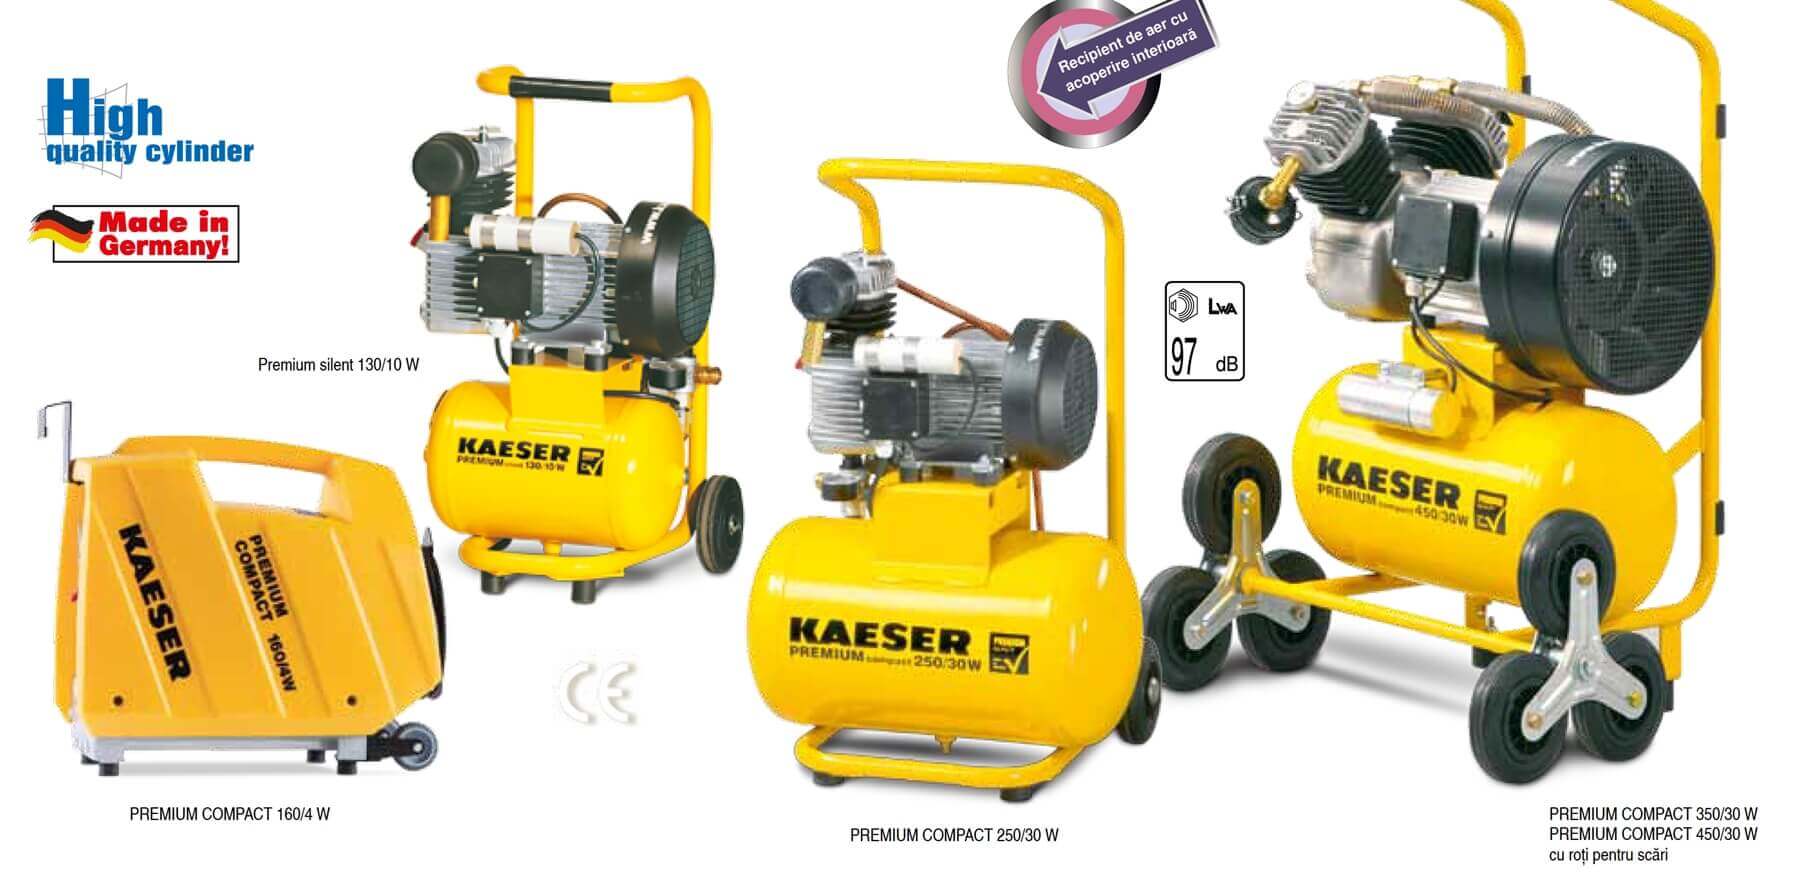 Reciprocating compressors kaeser